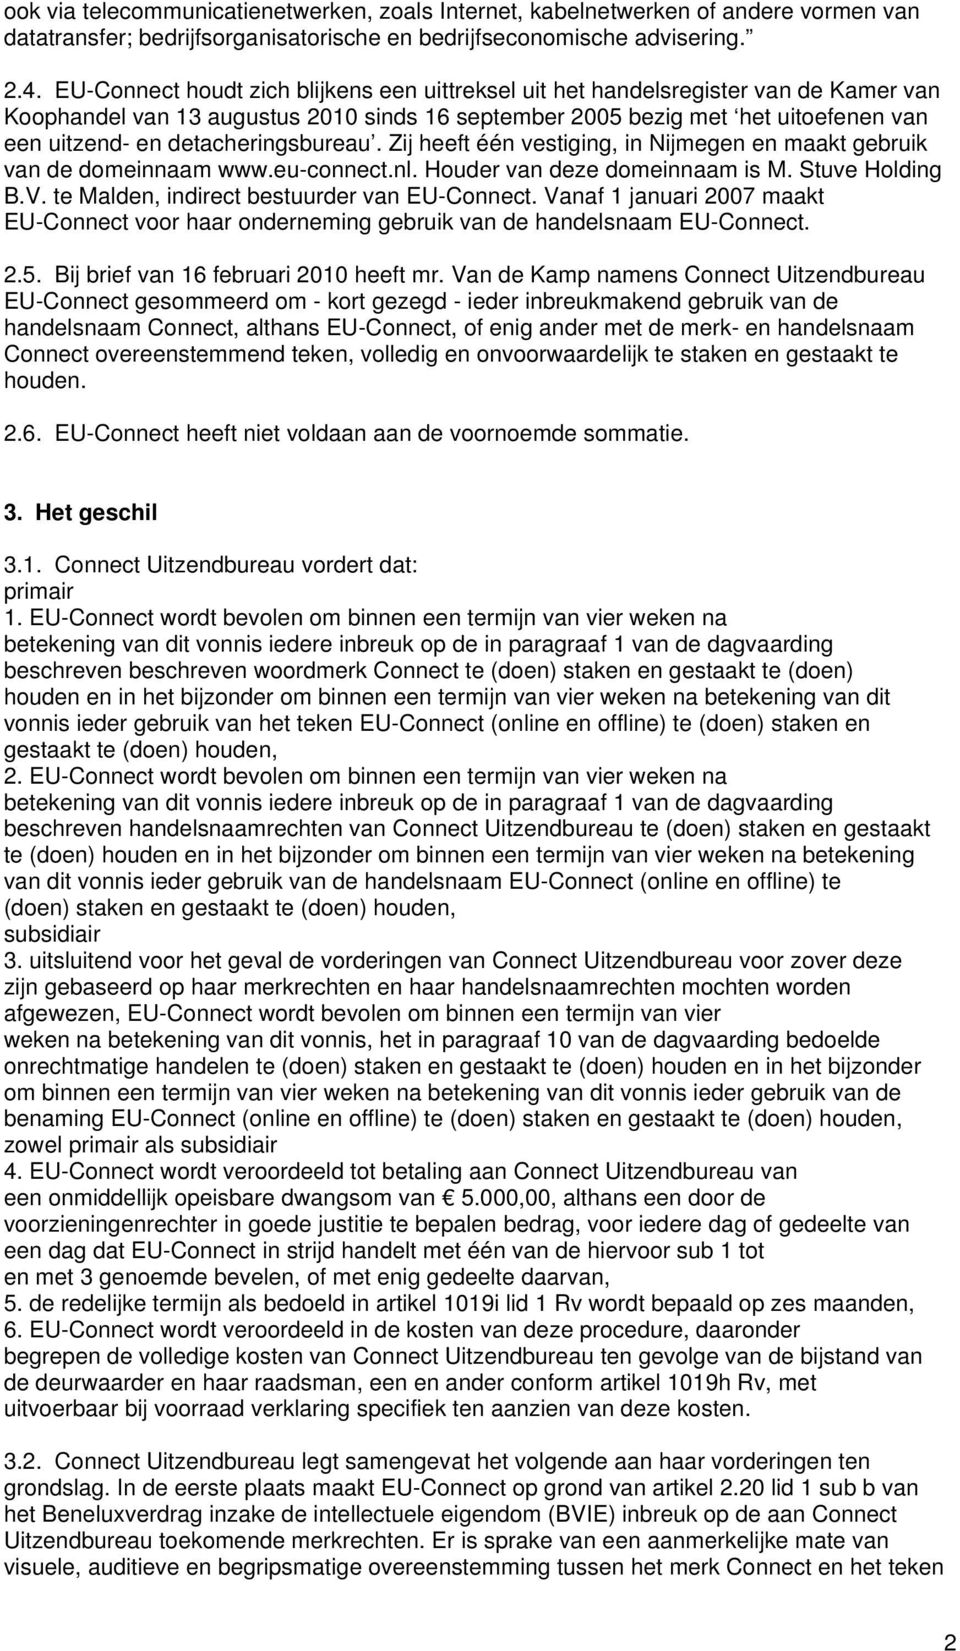 detacheringsbureau. Zij heeft één vestiging, in Nijmegen en maakt gebruik van de domeinnaam www.eu-connect.nl. Houder van deze domeinnaam is M. Stuve Holding B.V.